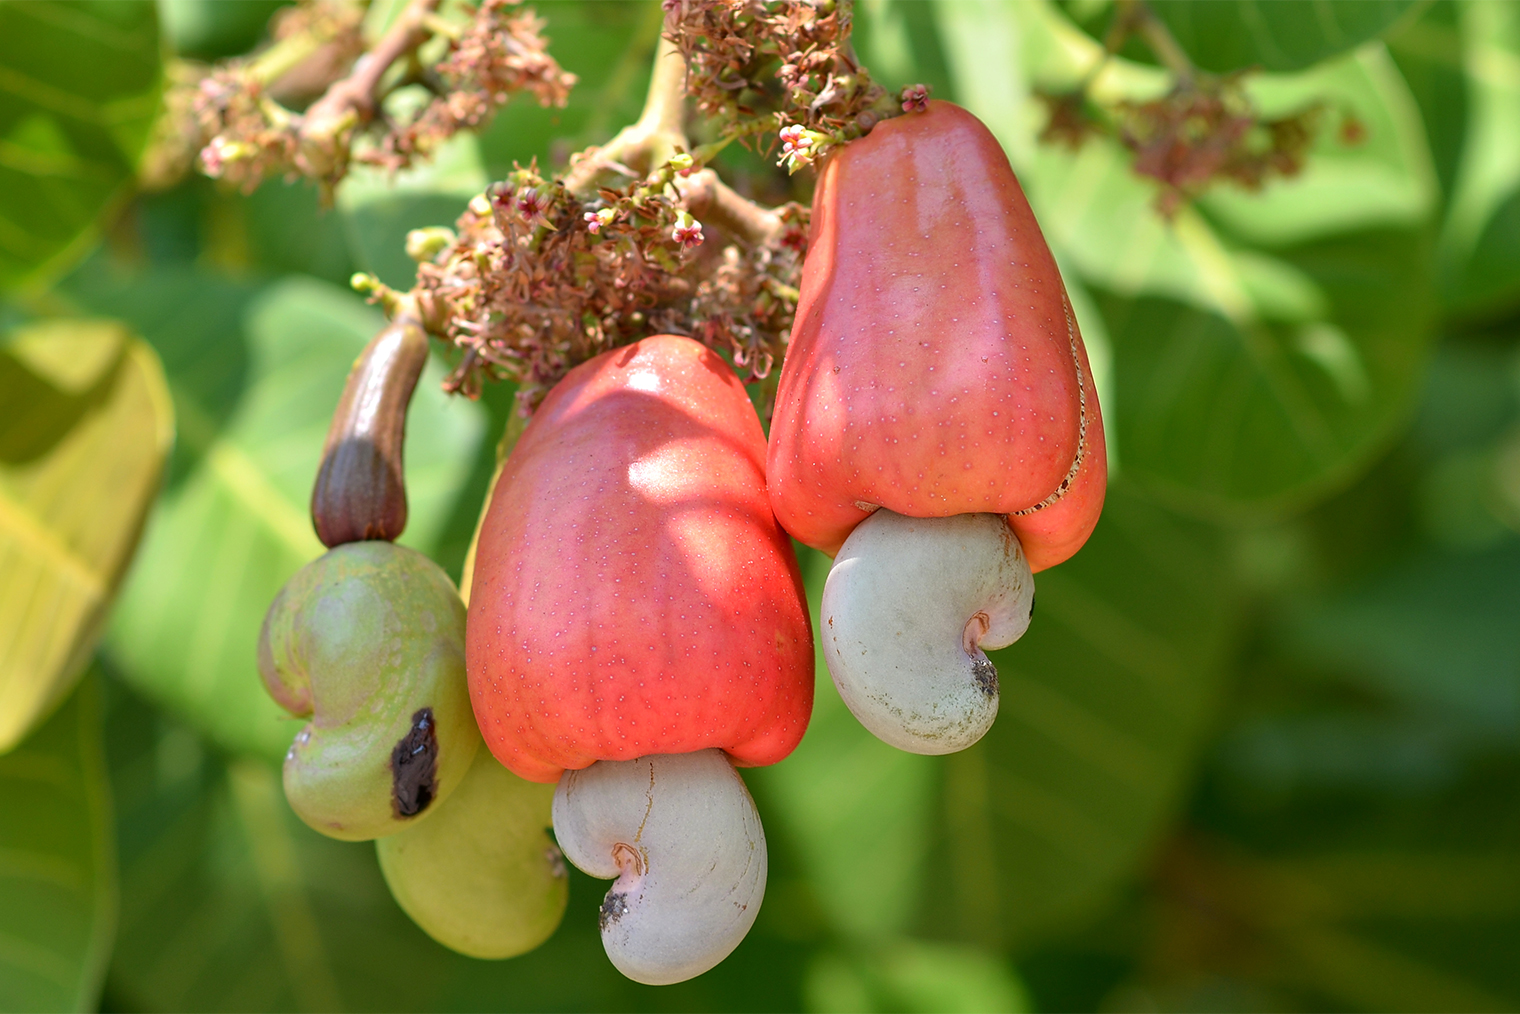 Двойной плод кешью. Фотография: wichitpong katwit / Shutterstock / FOTODOM